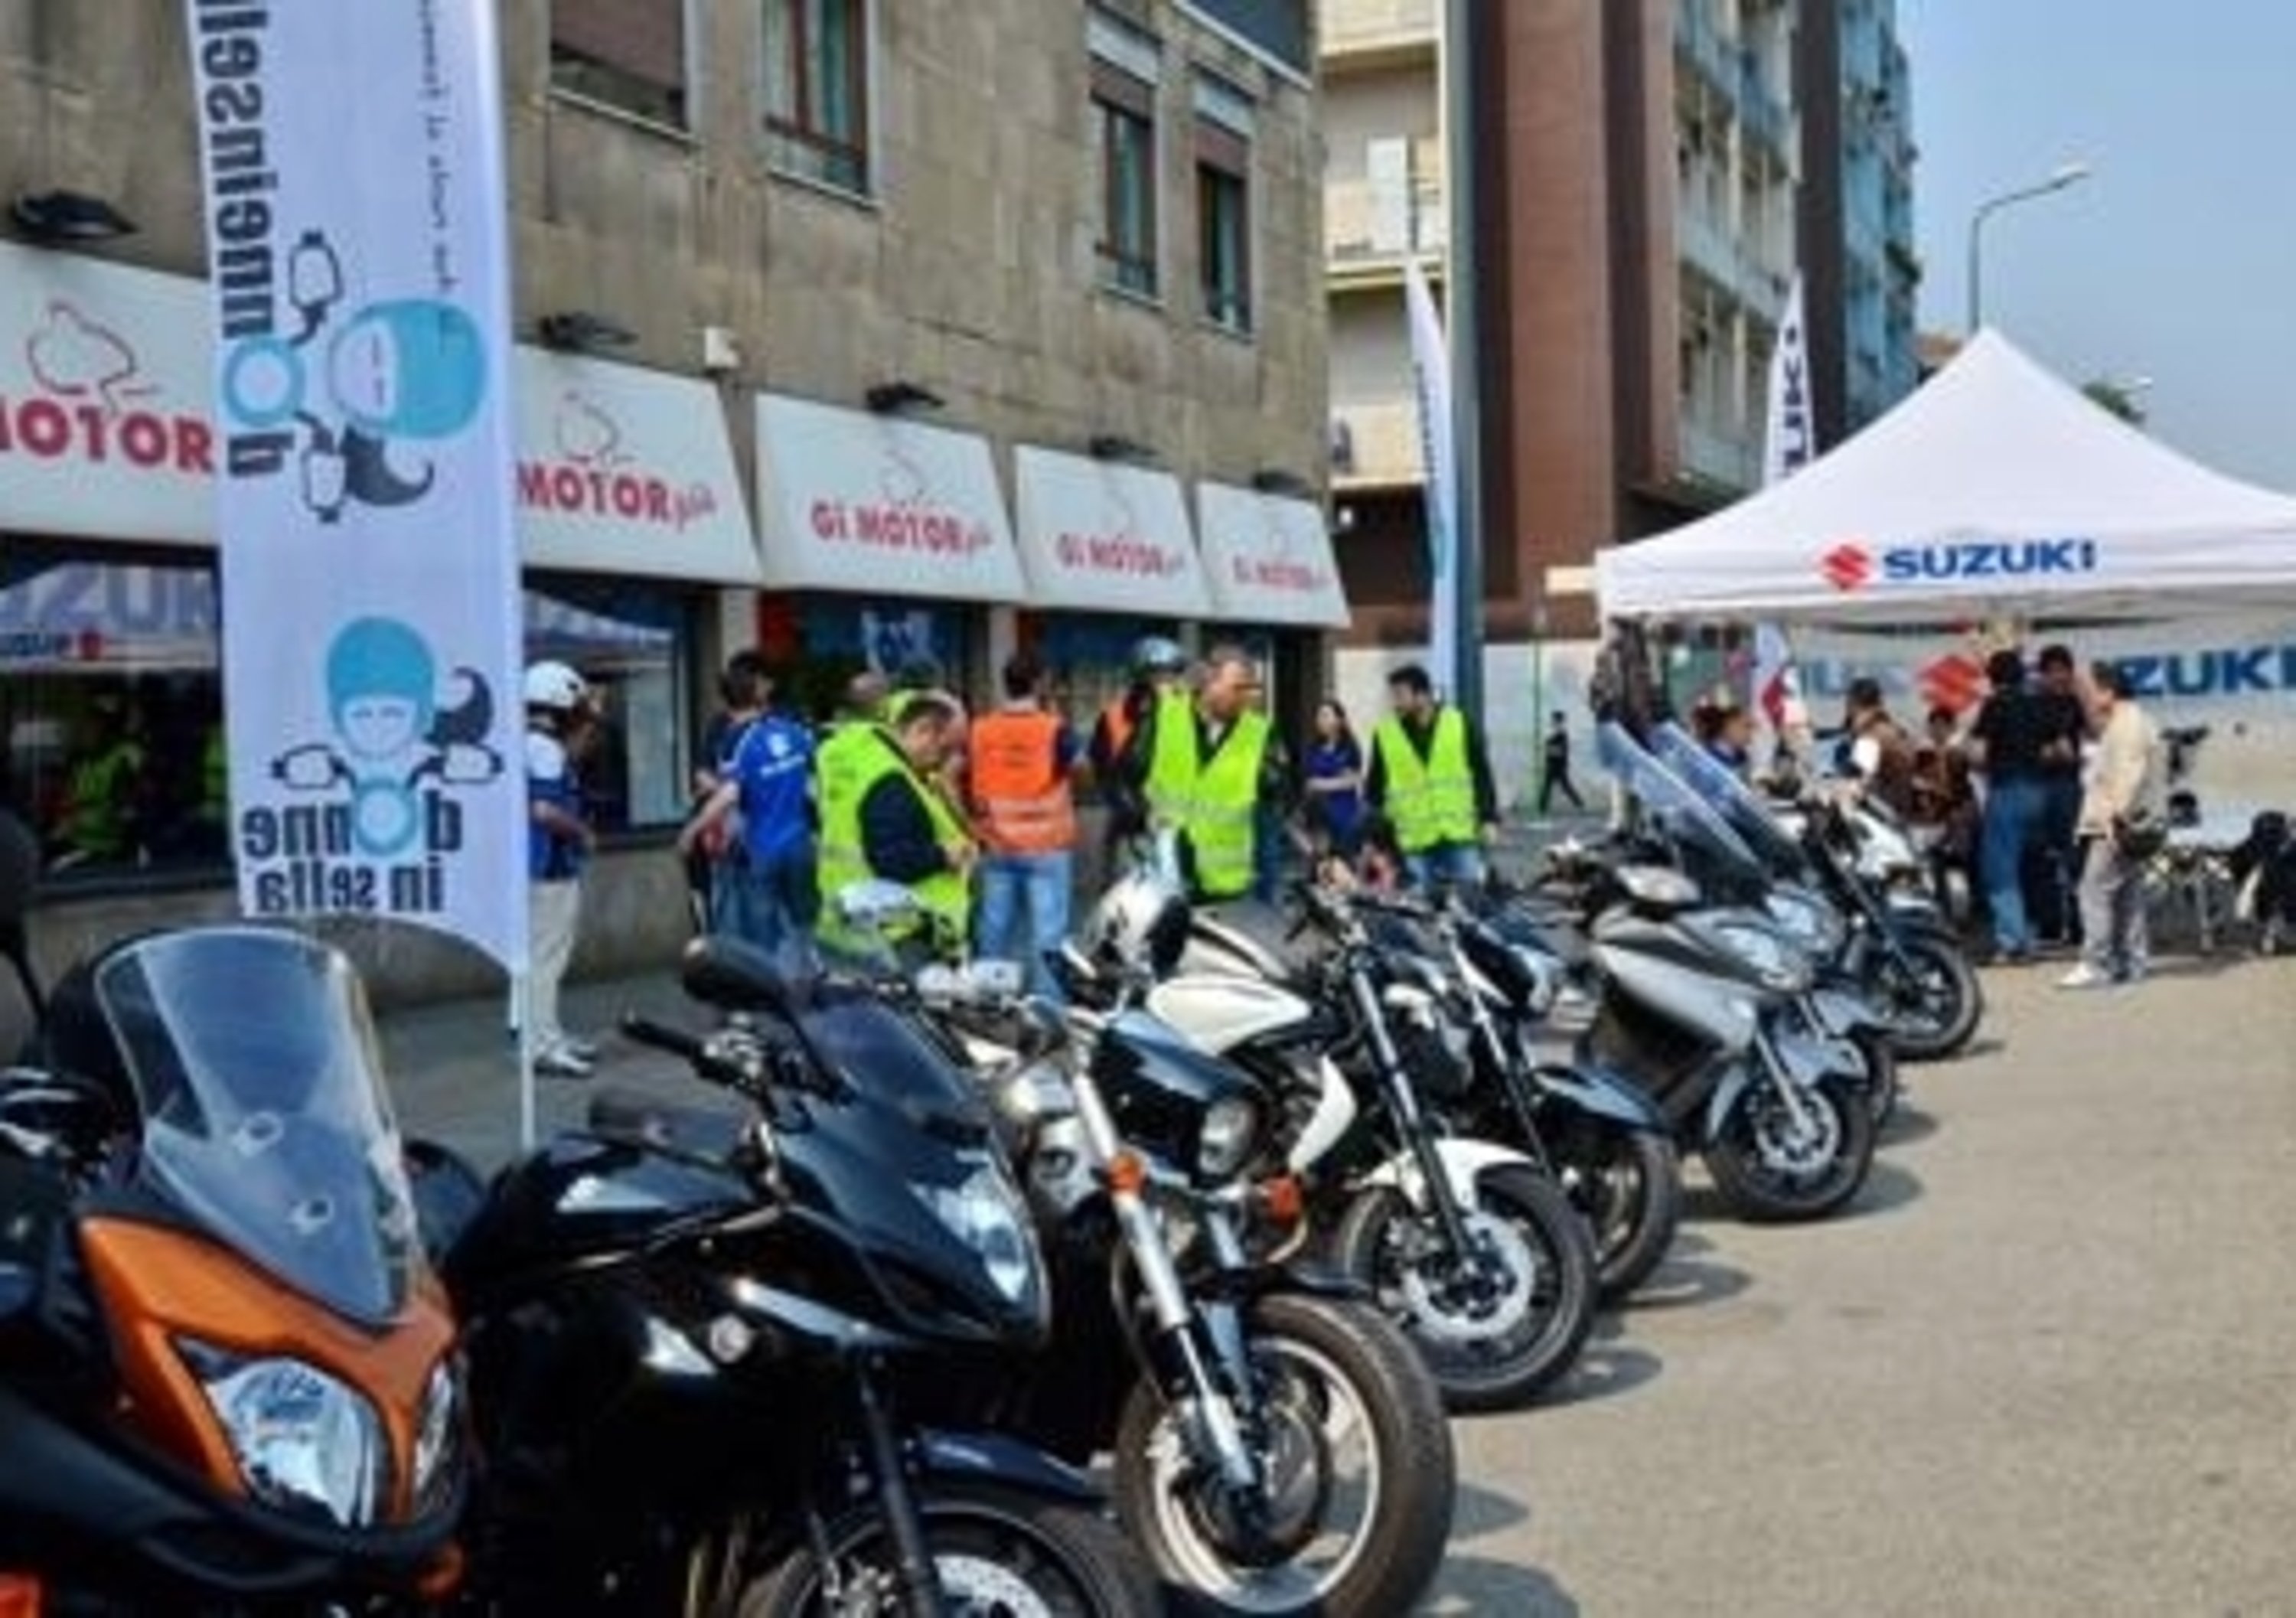 Il Suzuki Demo Ride Tour arriva a Milano